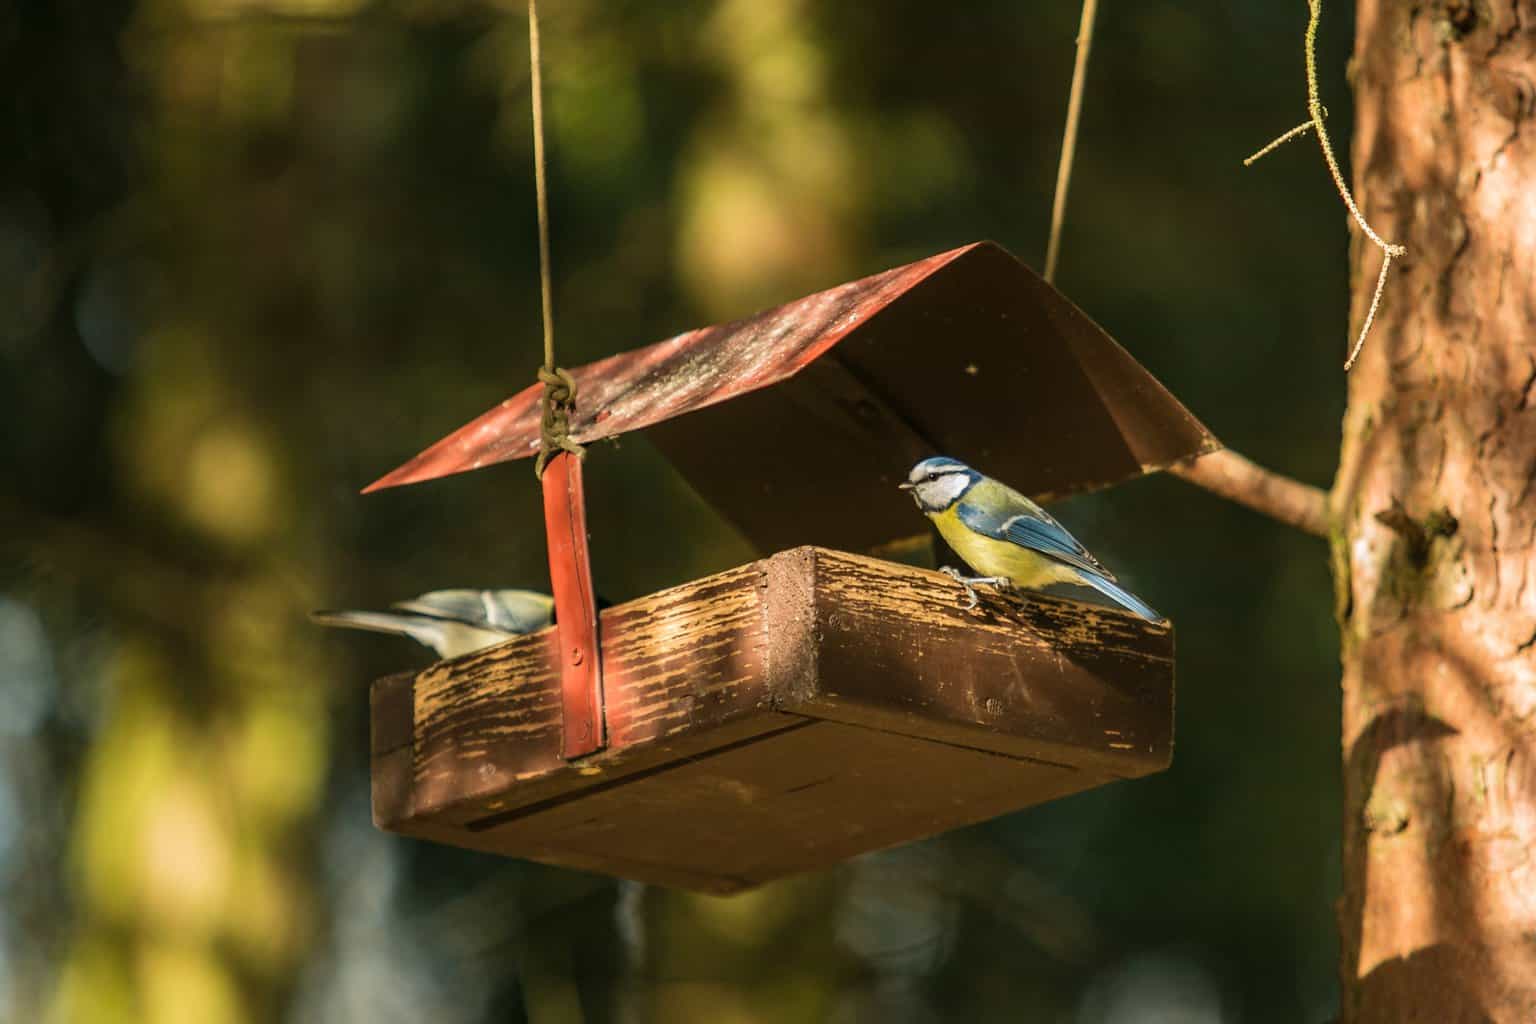 Alimentación de pájaros en verano: explore este tema fascinante